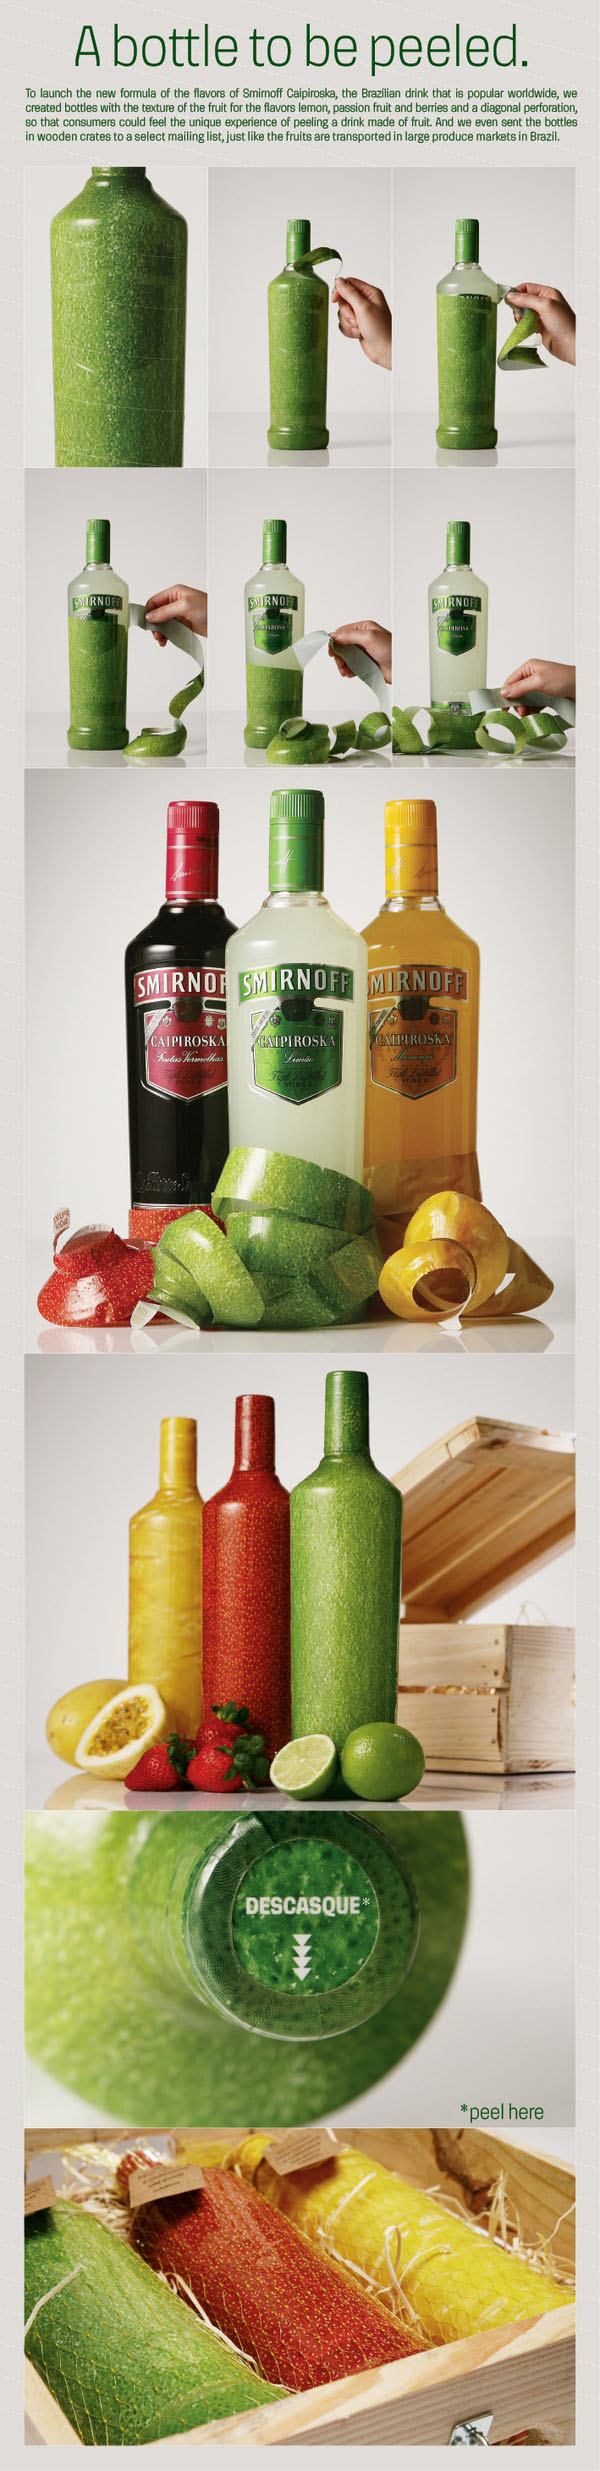 Дизайн упаковки для жидких продуктов, бутылки